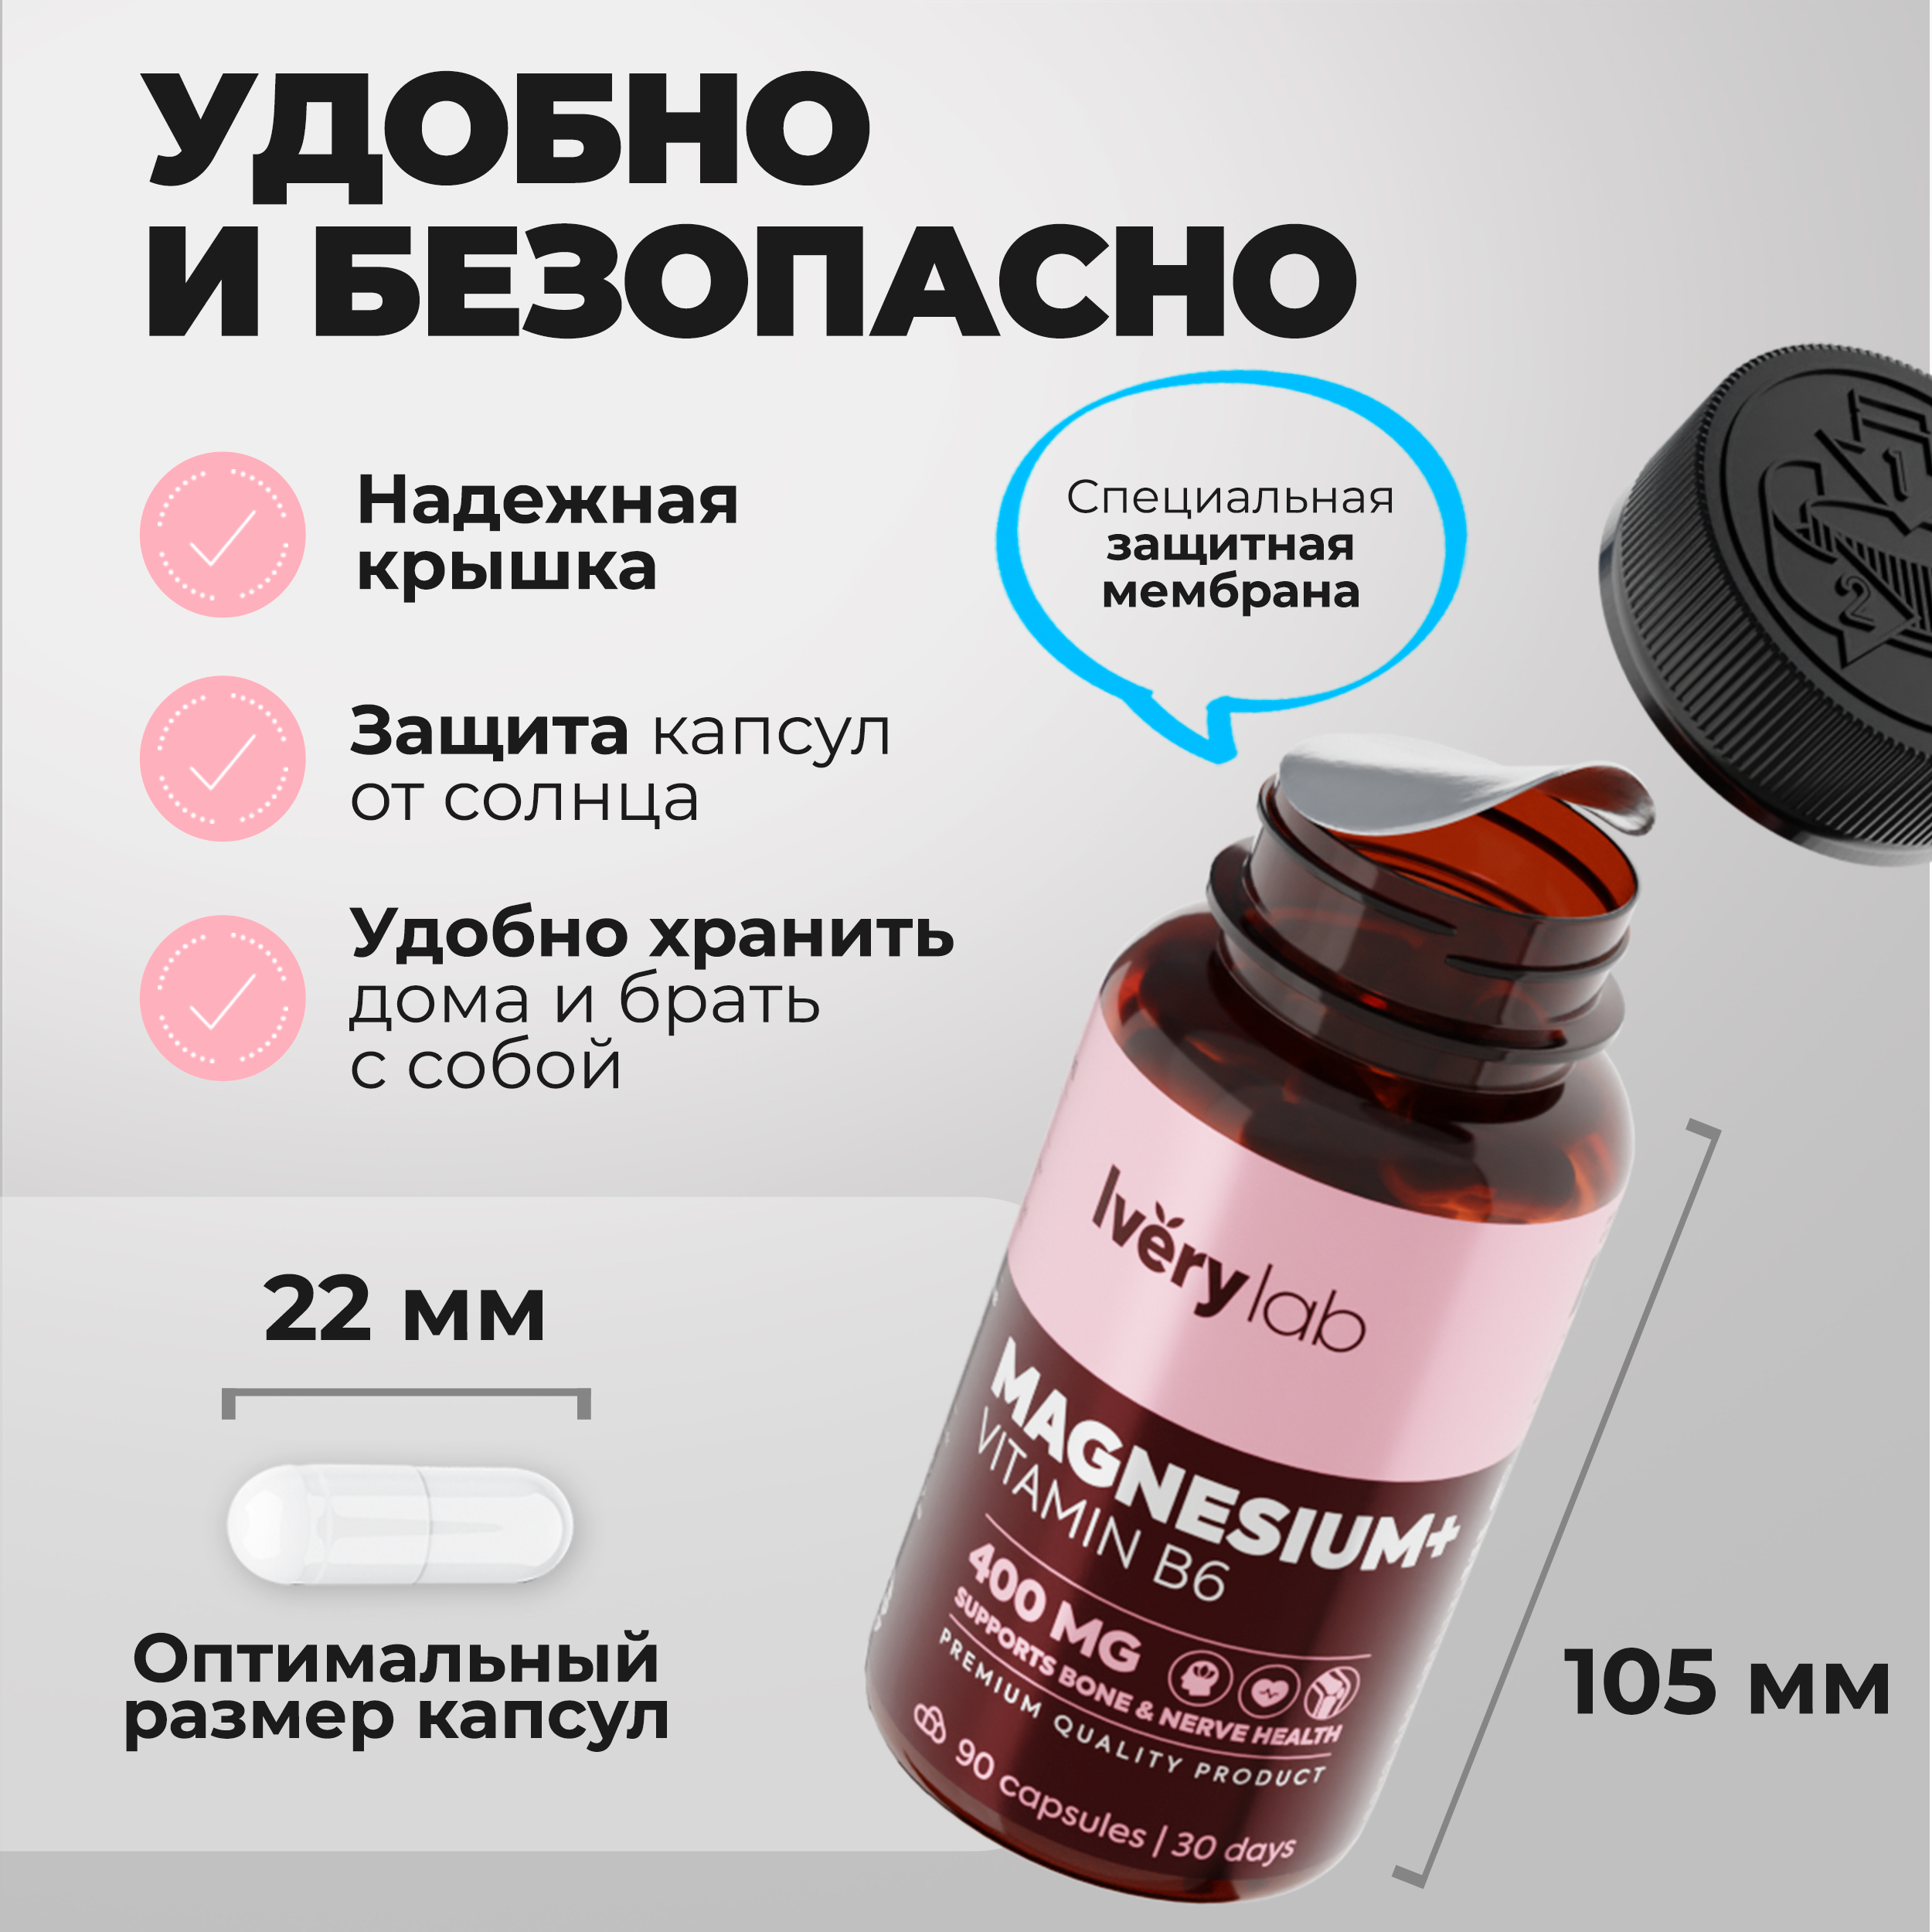 БАД Iverylab Комплекс магния и витамина B6 для памяти и нервной системы Magnesium + Vitamin B6 - фото 4